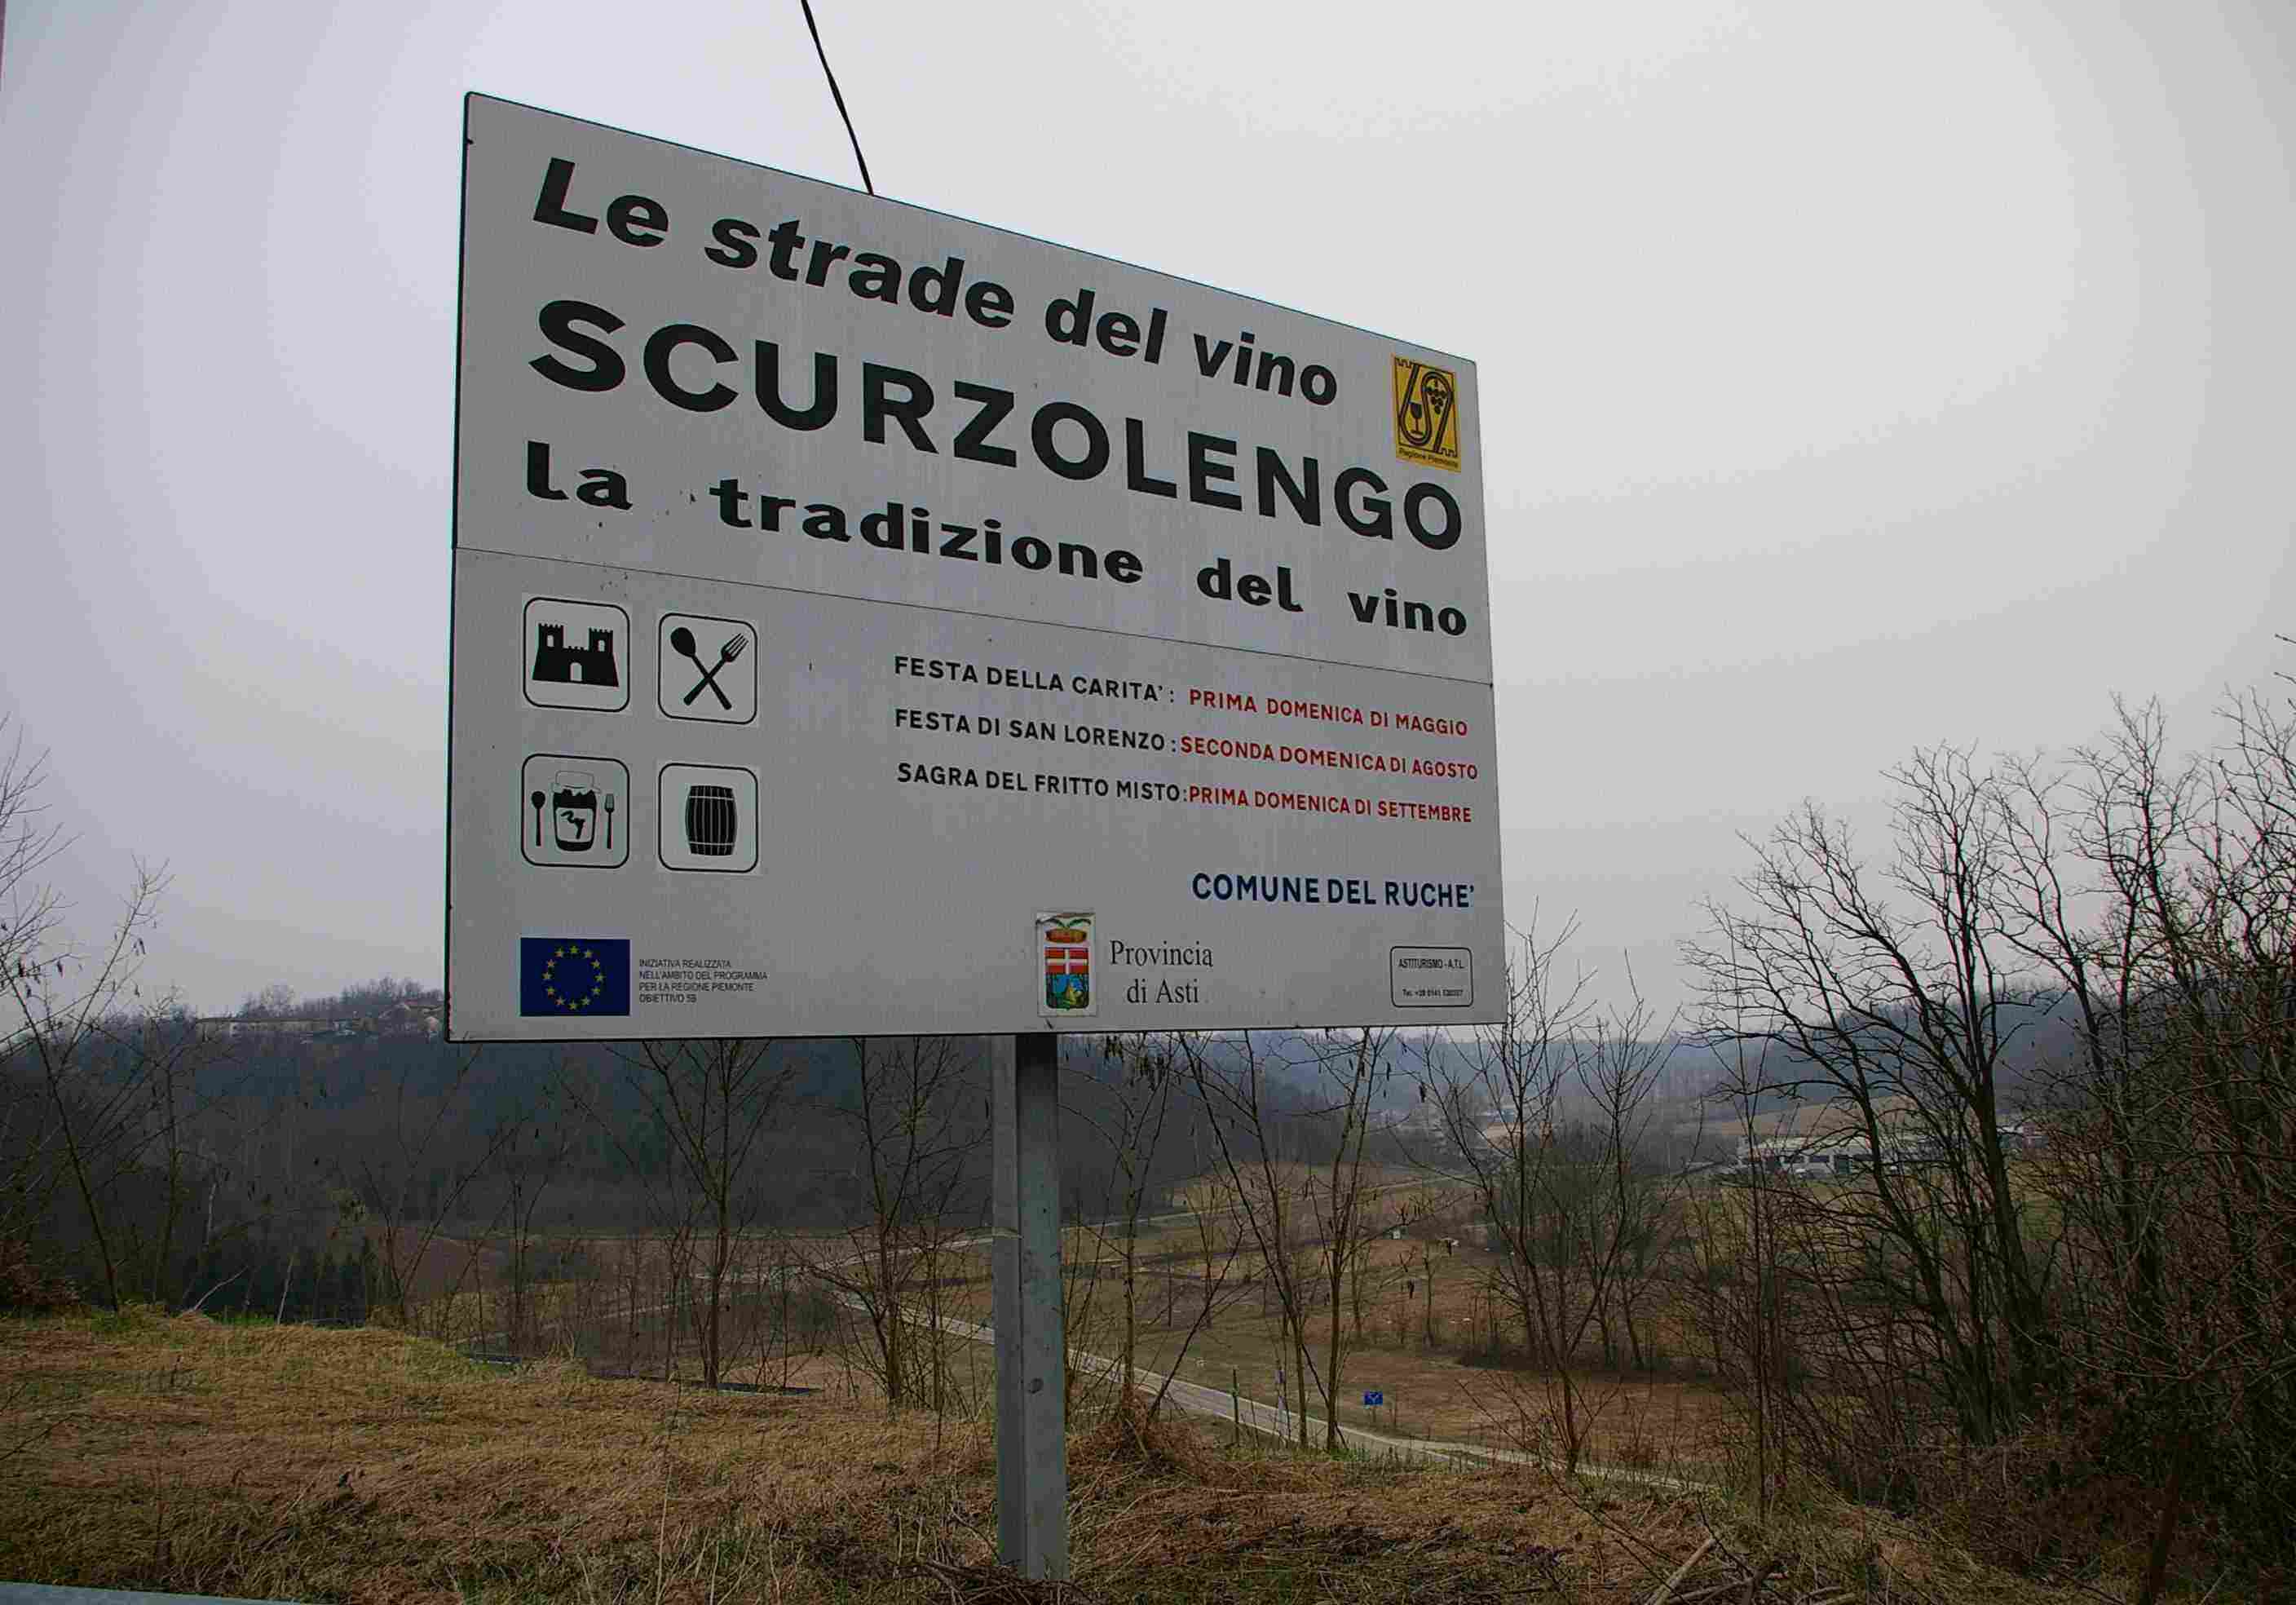 Cartellone all'ingresso dell'abitato di Scurzolengo (AT) indicante la vocazione vitivinicola del territorio.